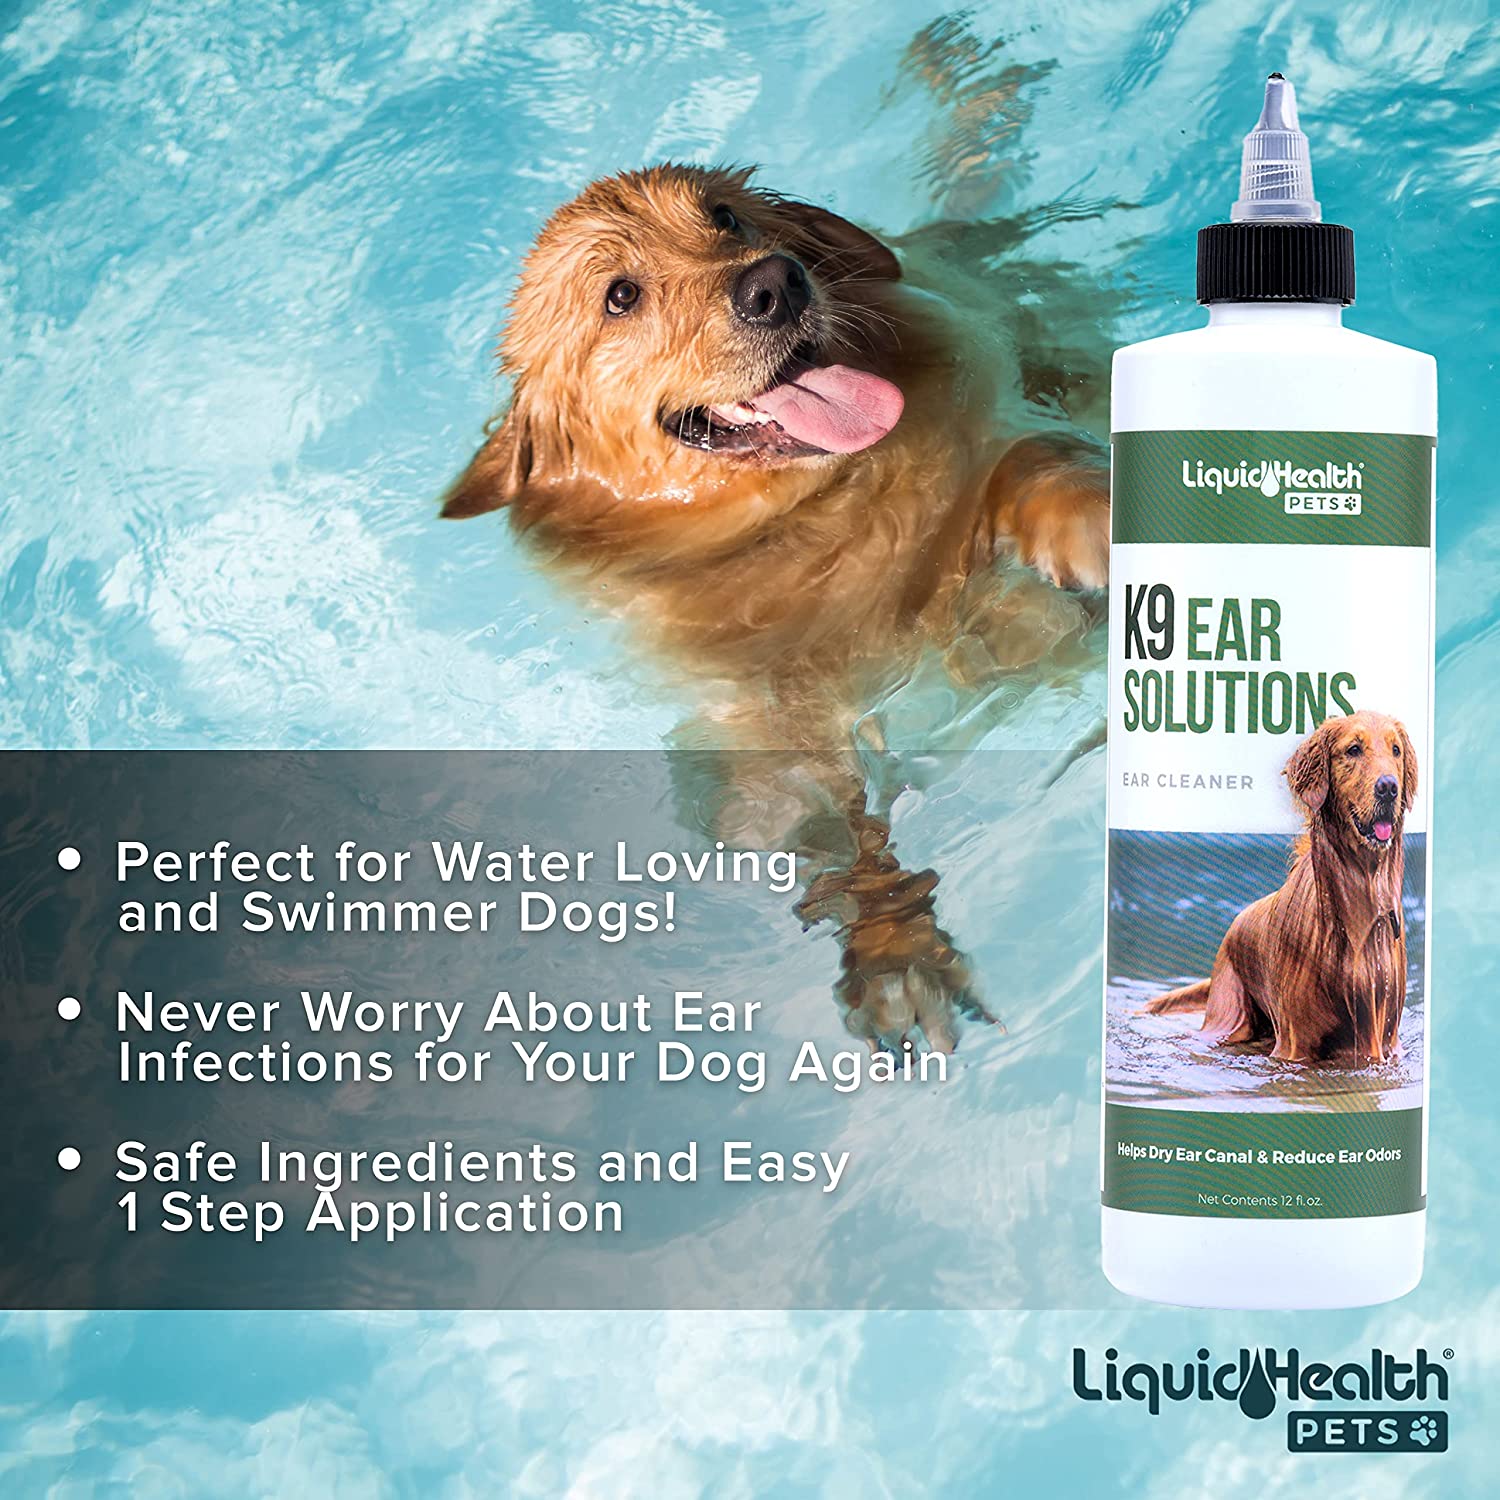 Liquid-Health-Pets-k9-Ear-Solutions